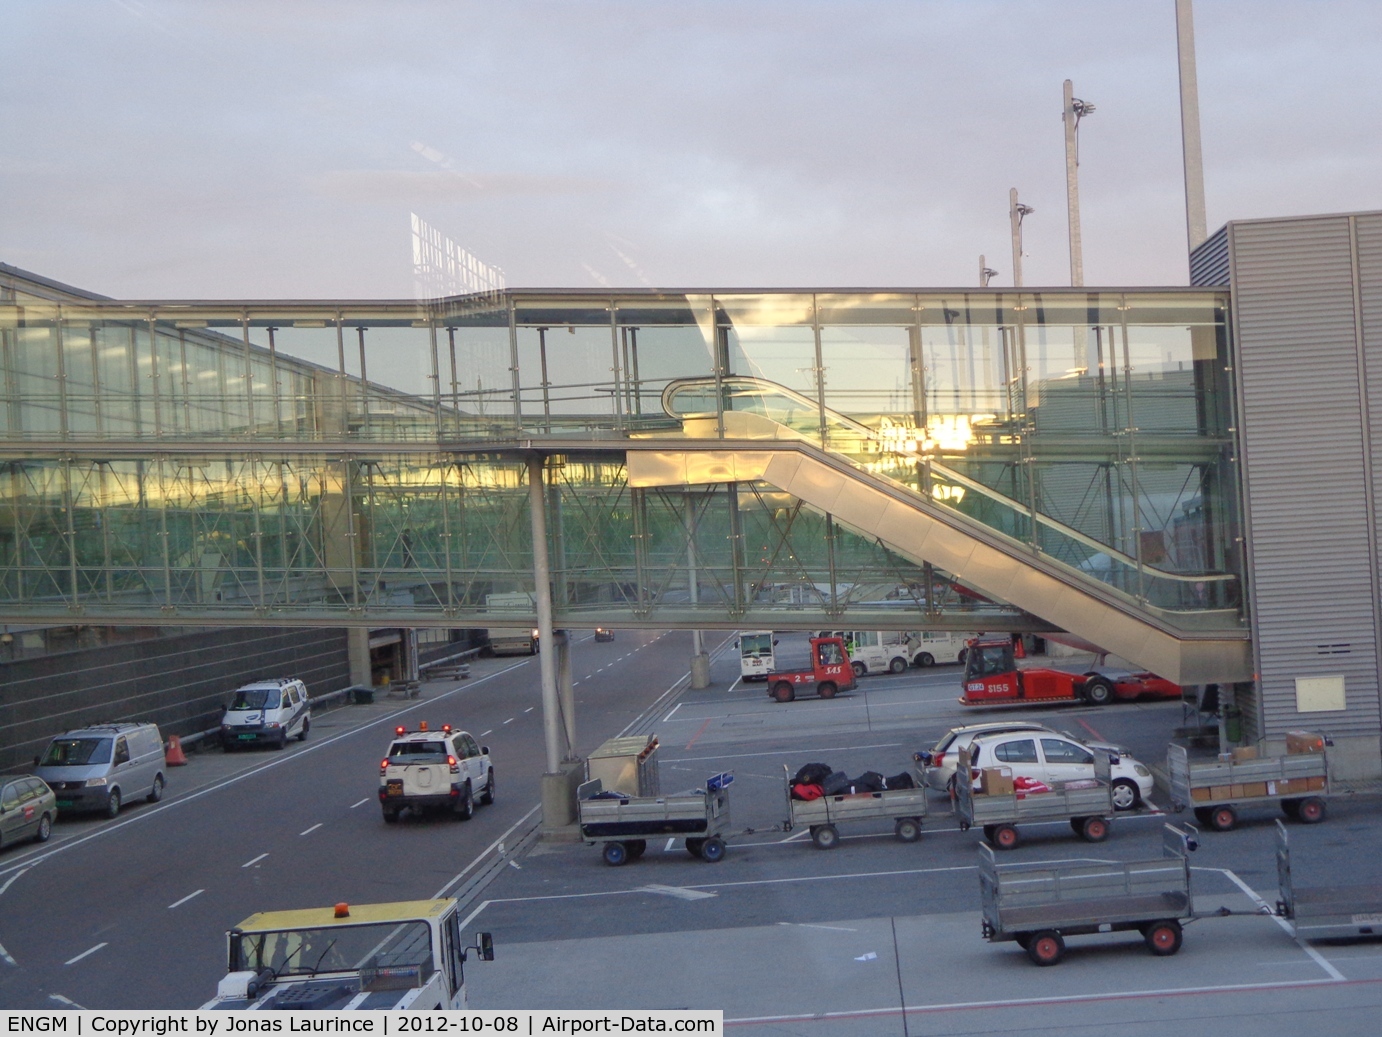 Oslo Airport, Gardermoen, Gardermoen (near Oslo), Akershus Norway (ENGM) - Oslo Airport, Gardermoen